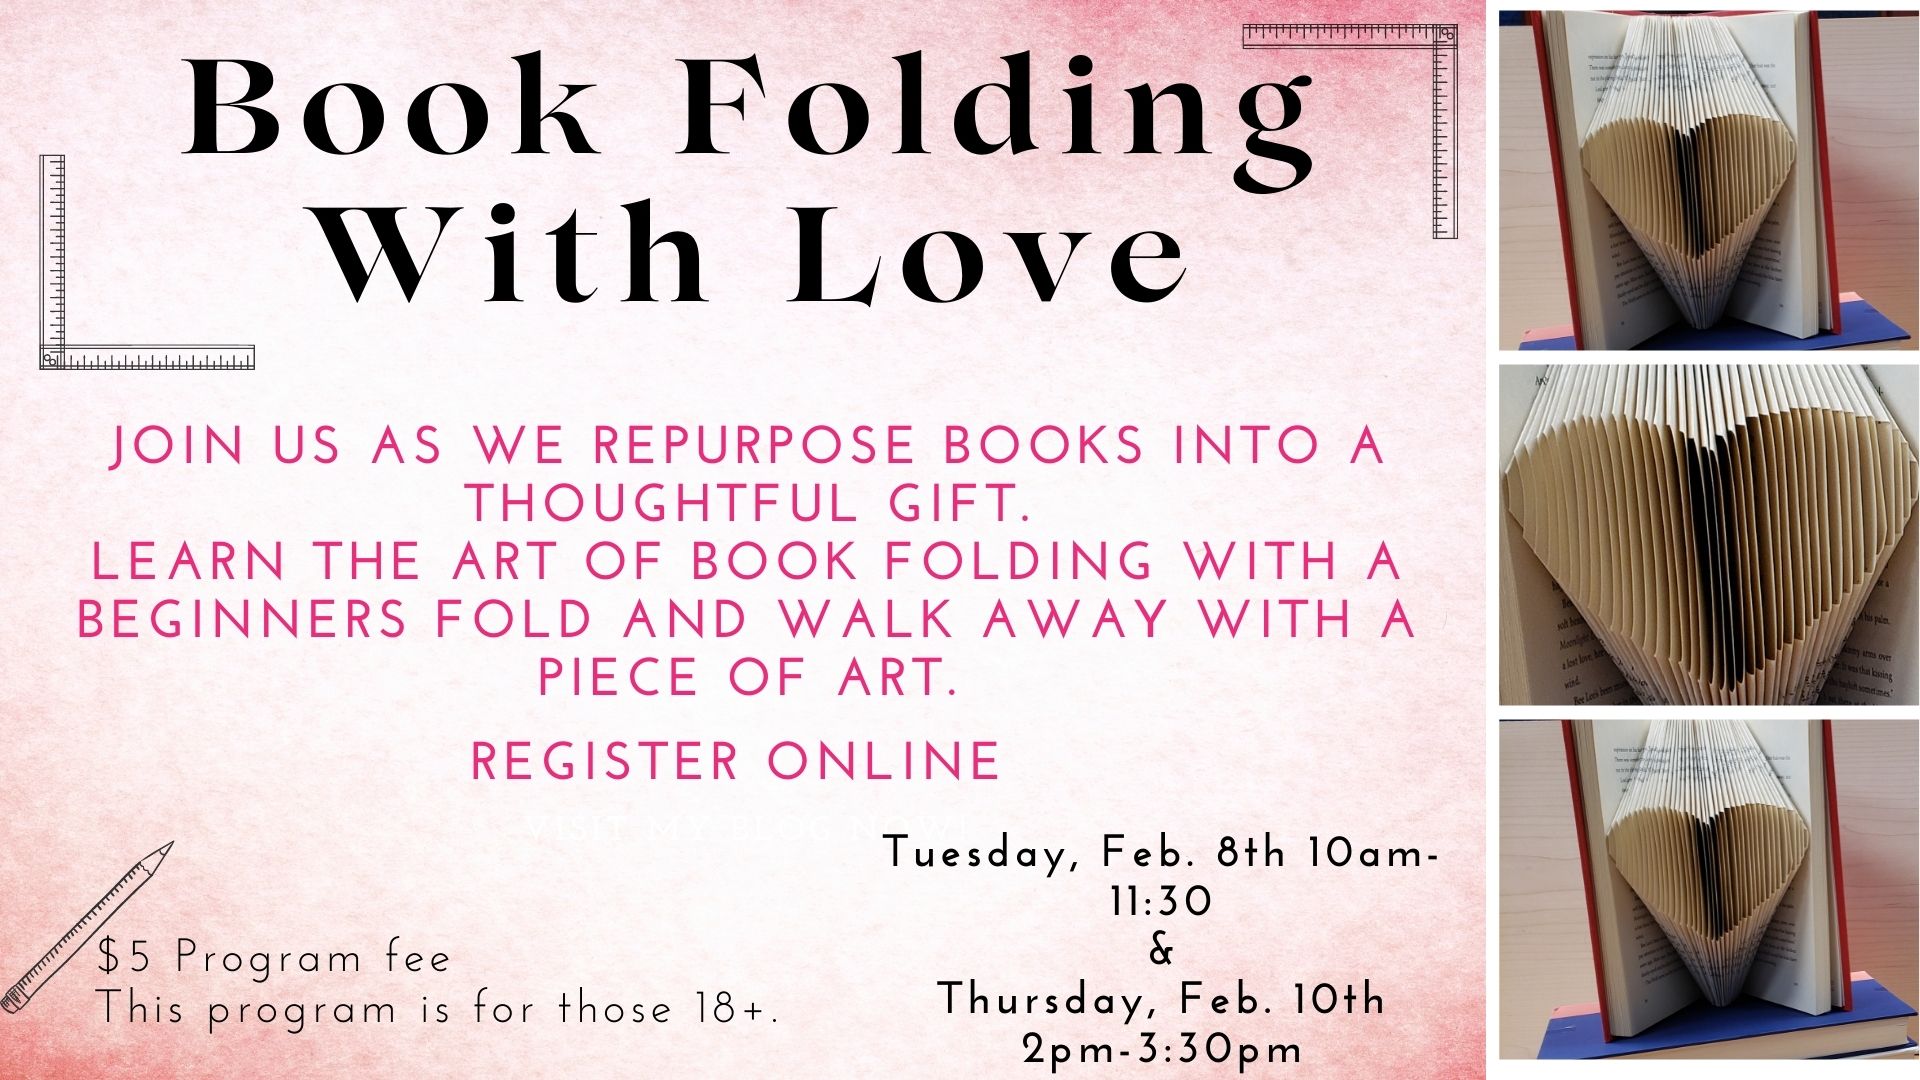 Flyer for Book Folding program